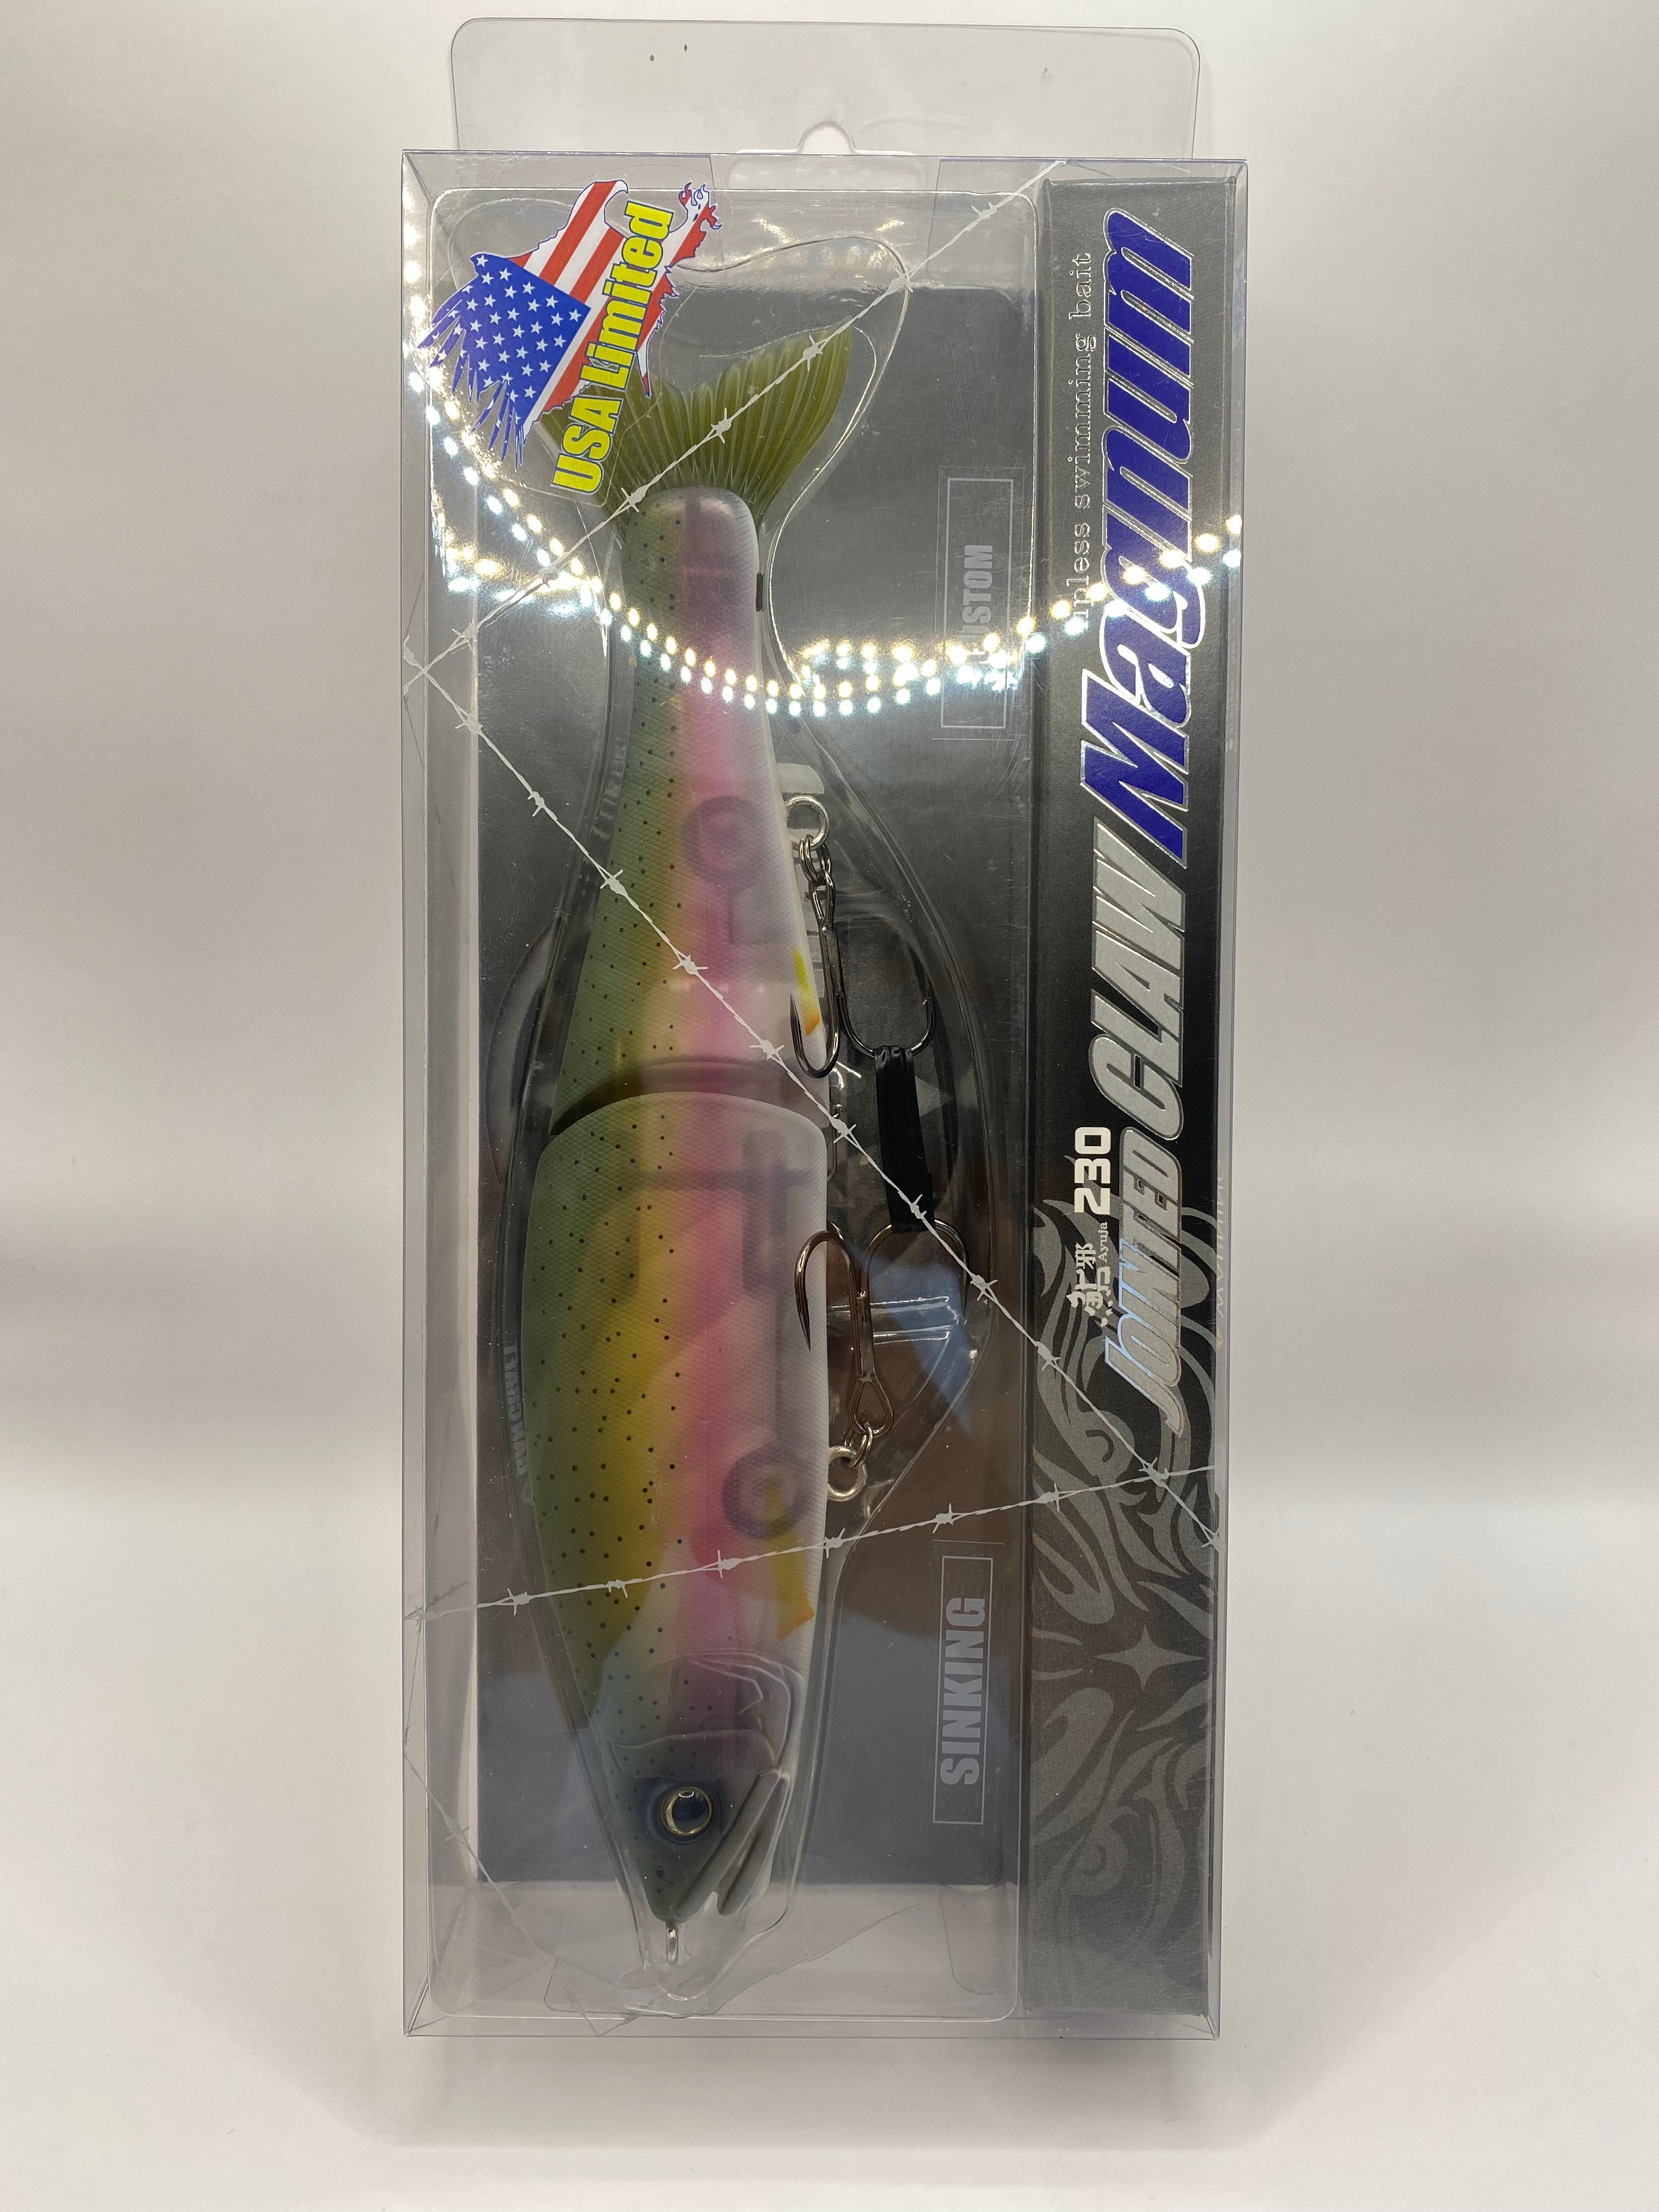 Gan Craft Fish Arrow Studio Oceanmark Uoya New Product for 2010